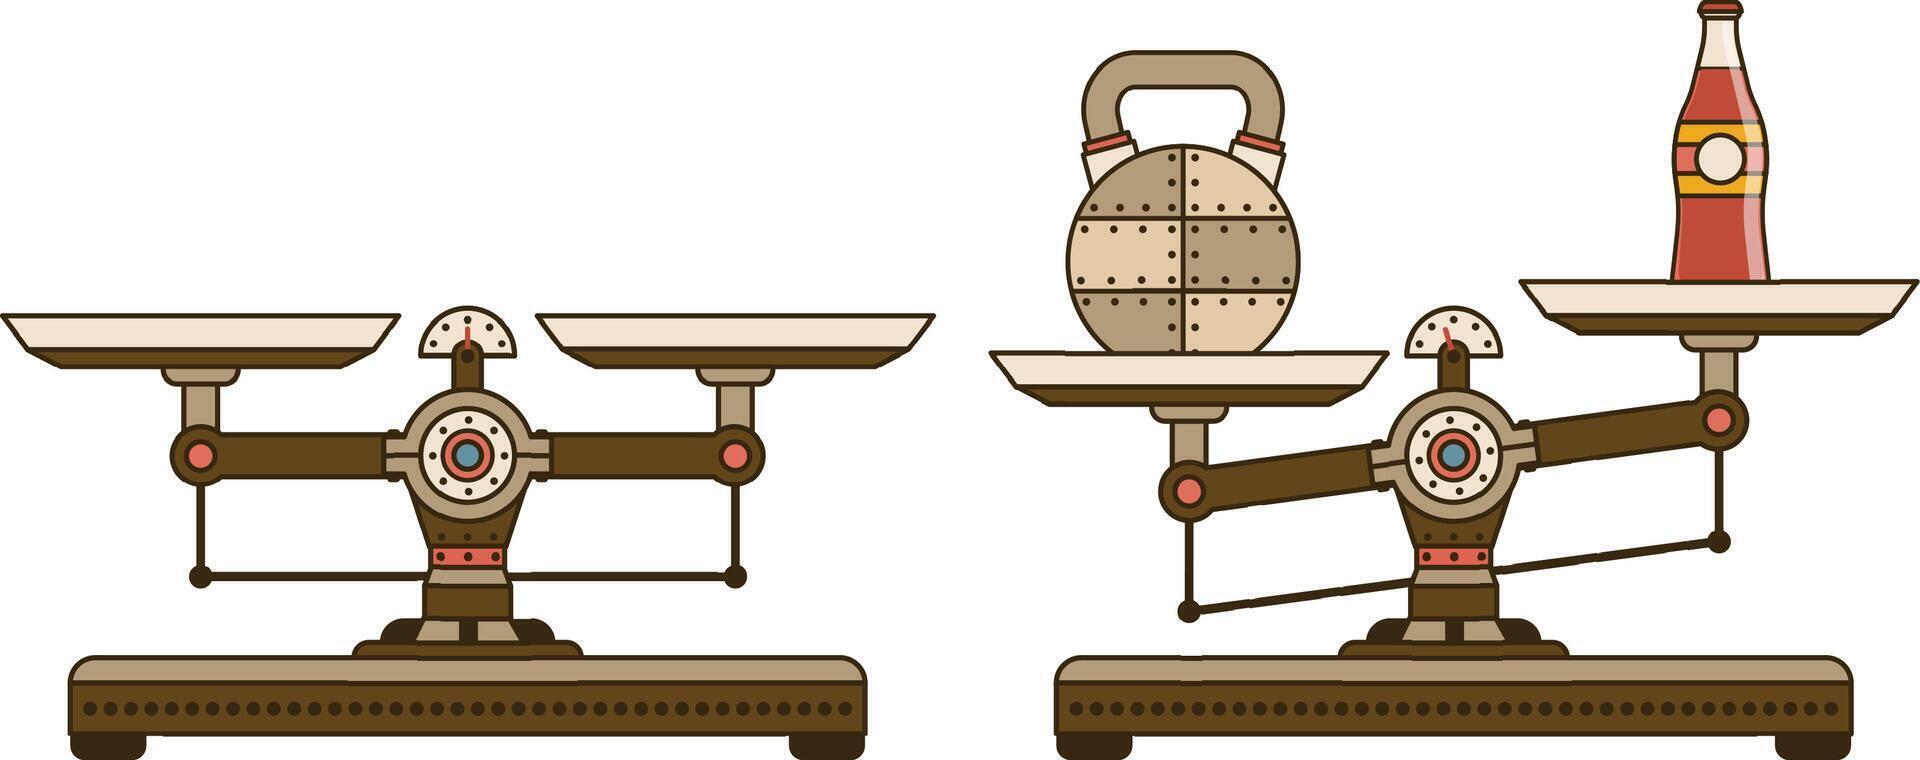 industriel Balance avec poids - steampunk dessin animé style. illustration. vecteur